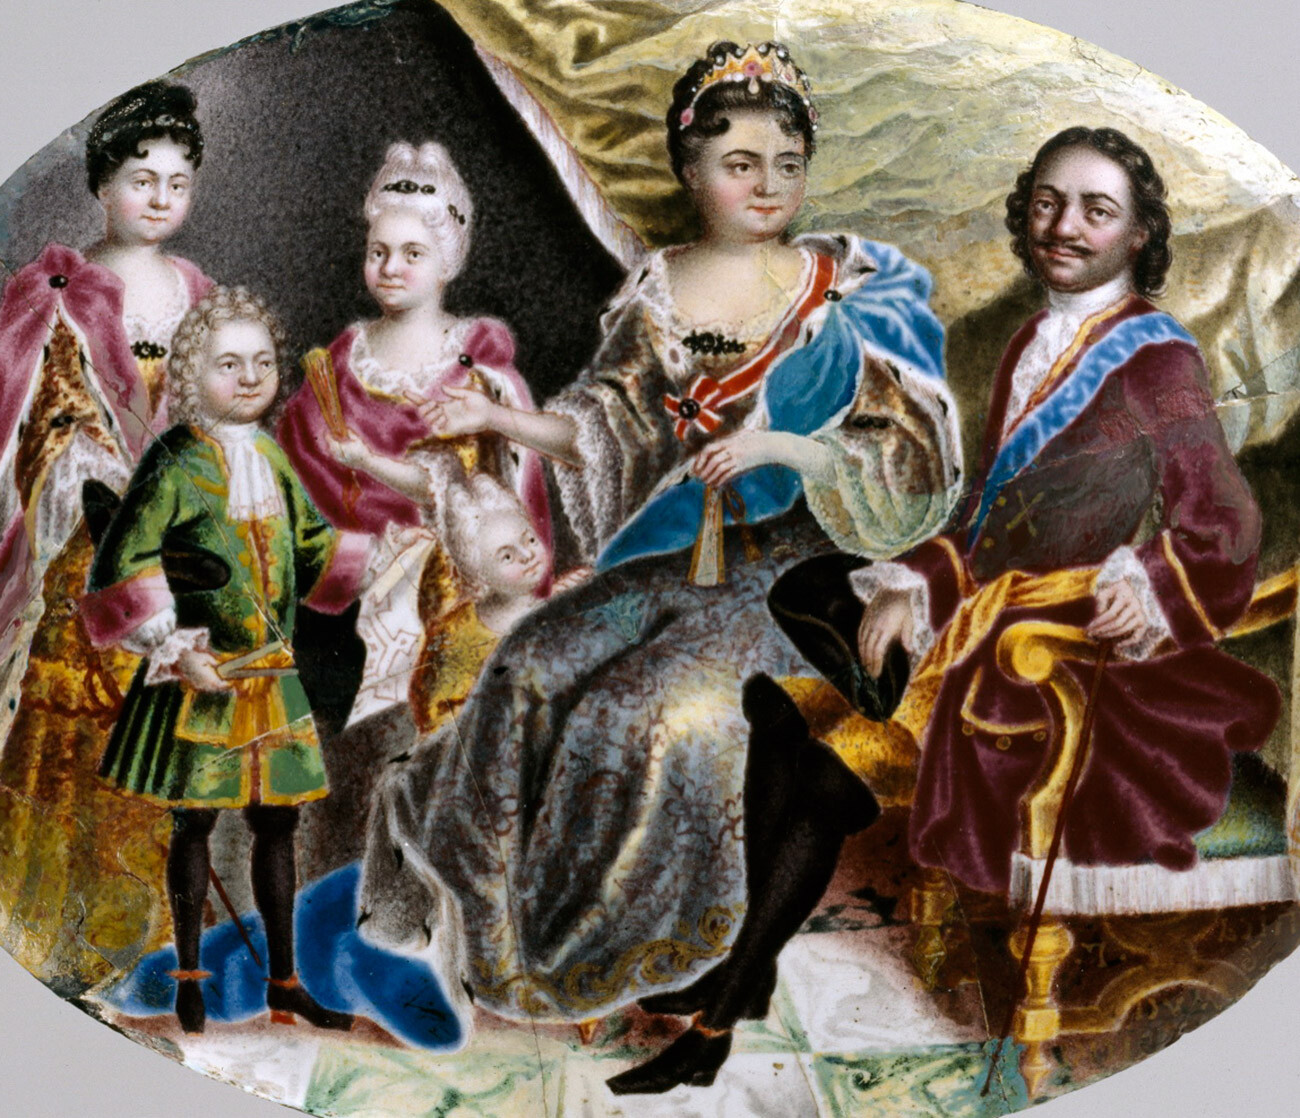 Peter der Große ist zusammen mit seiner Frau Katharina, seinen drei Töchtern Anna, Elisabeth (der späteren Kaiserin) und Natalia sowie seinem Enkel Peter (dem späteren Peter II.) abgebildet. 
